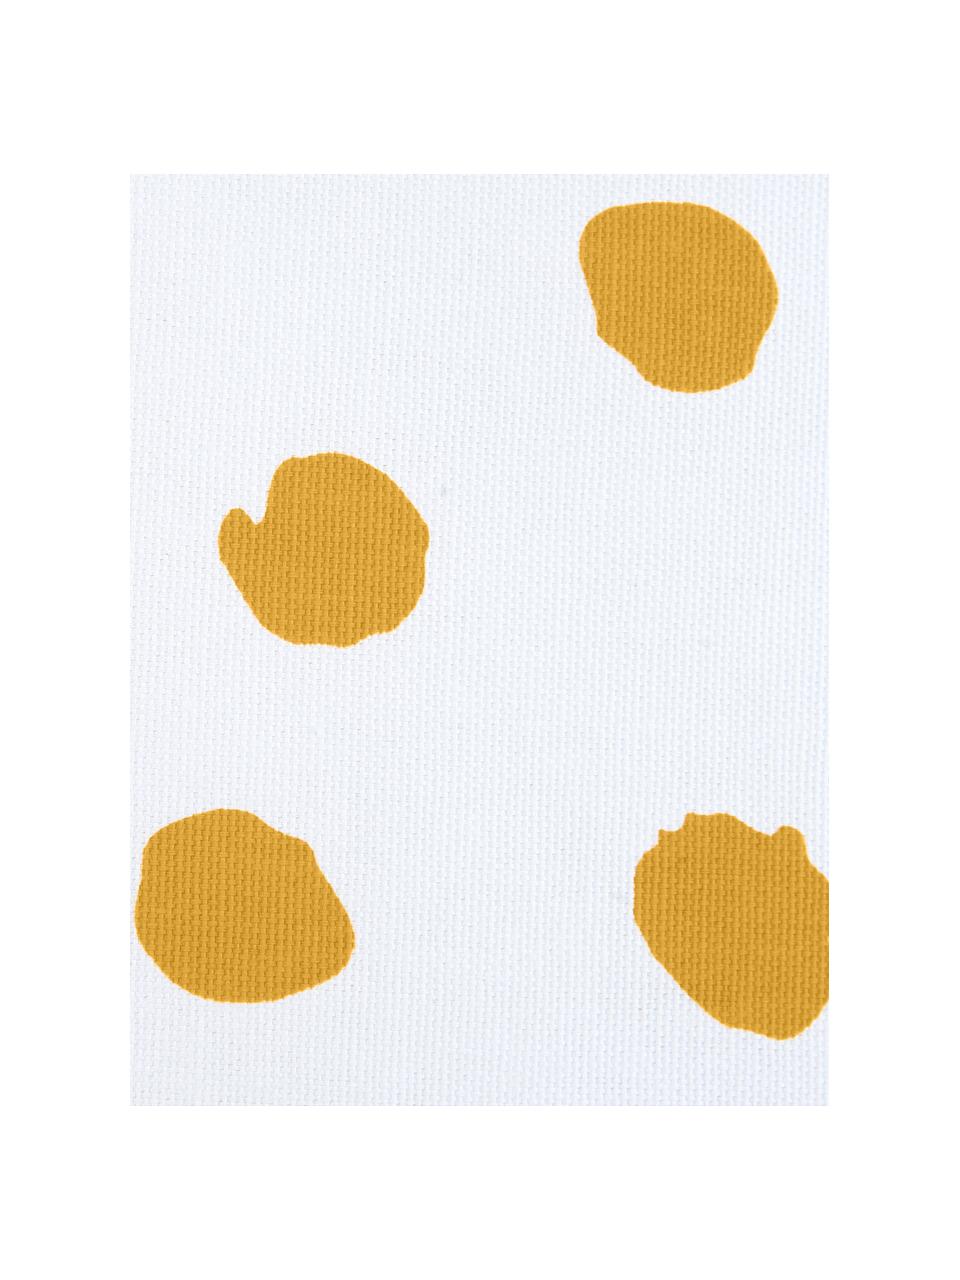 Gepunktete Kissenhülle Riley in Orange/Weiß, 100% Baumwolle, Orange, Weiß, 40 x 40 cm